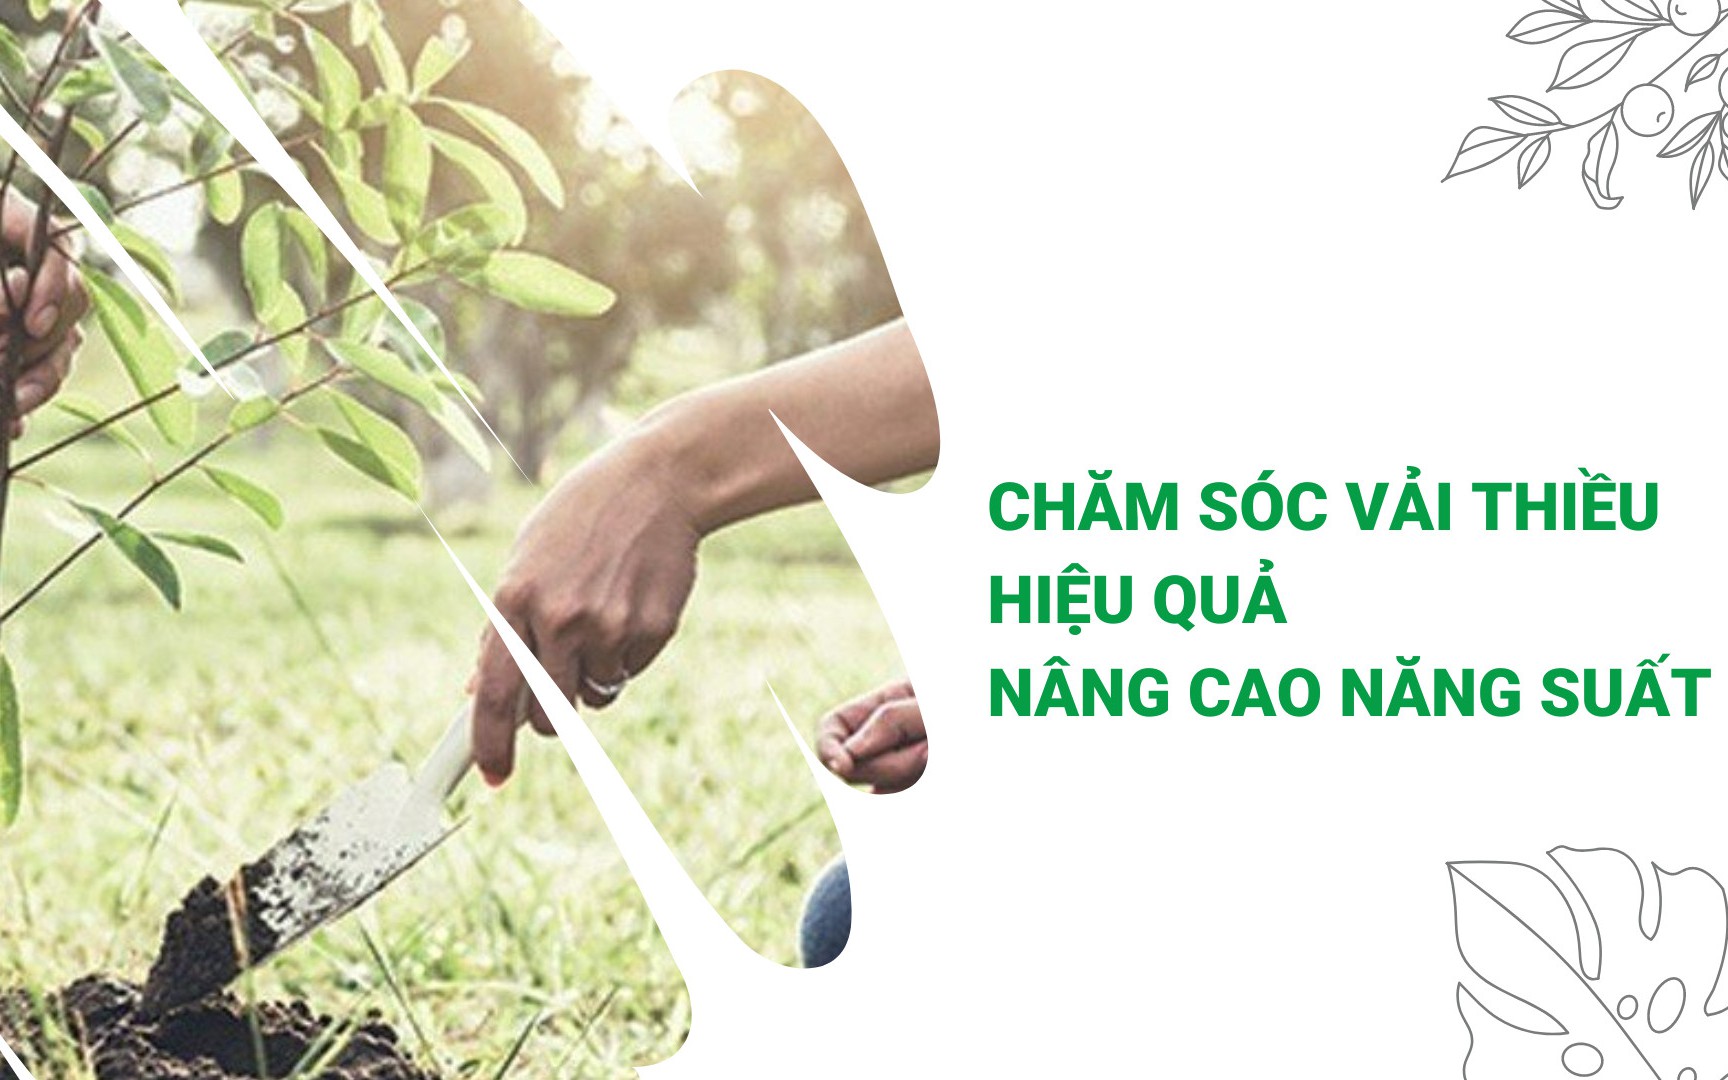 SỔ TAY NHÀ NÔNG: Mách bà con bí kíp bón phân cho cây vải thiều của nông dân Thanh Hà (Hải Dương)